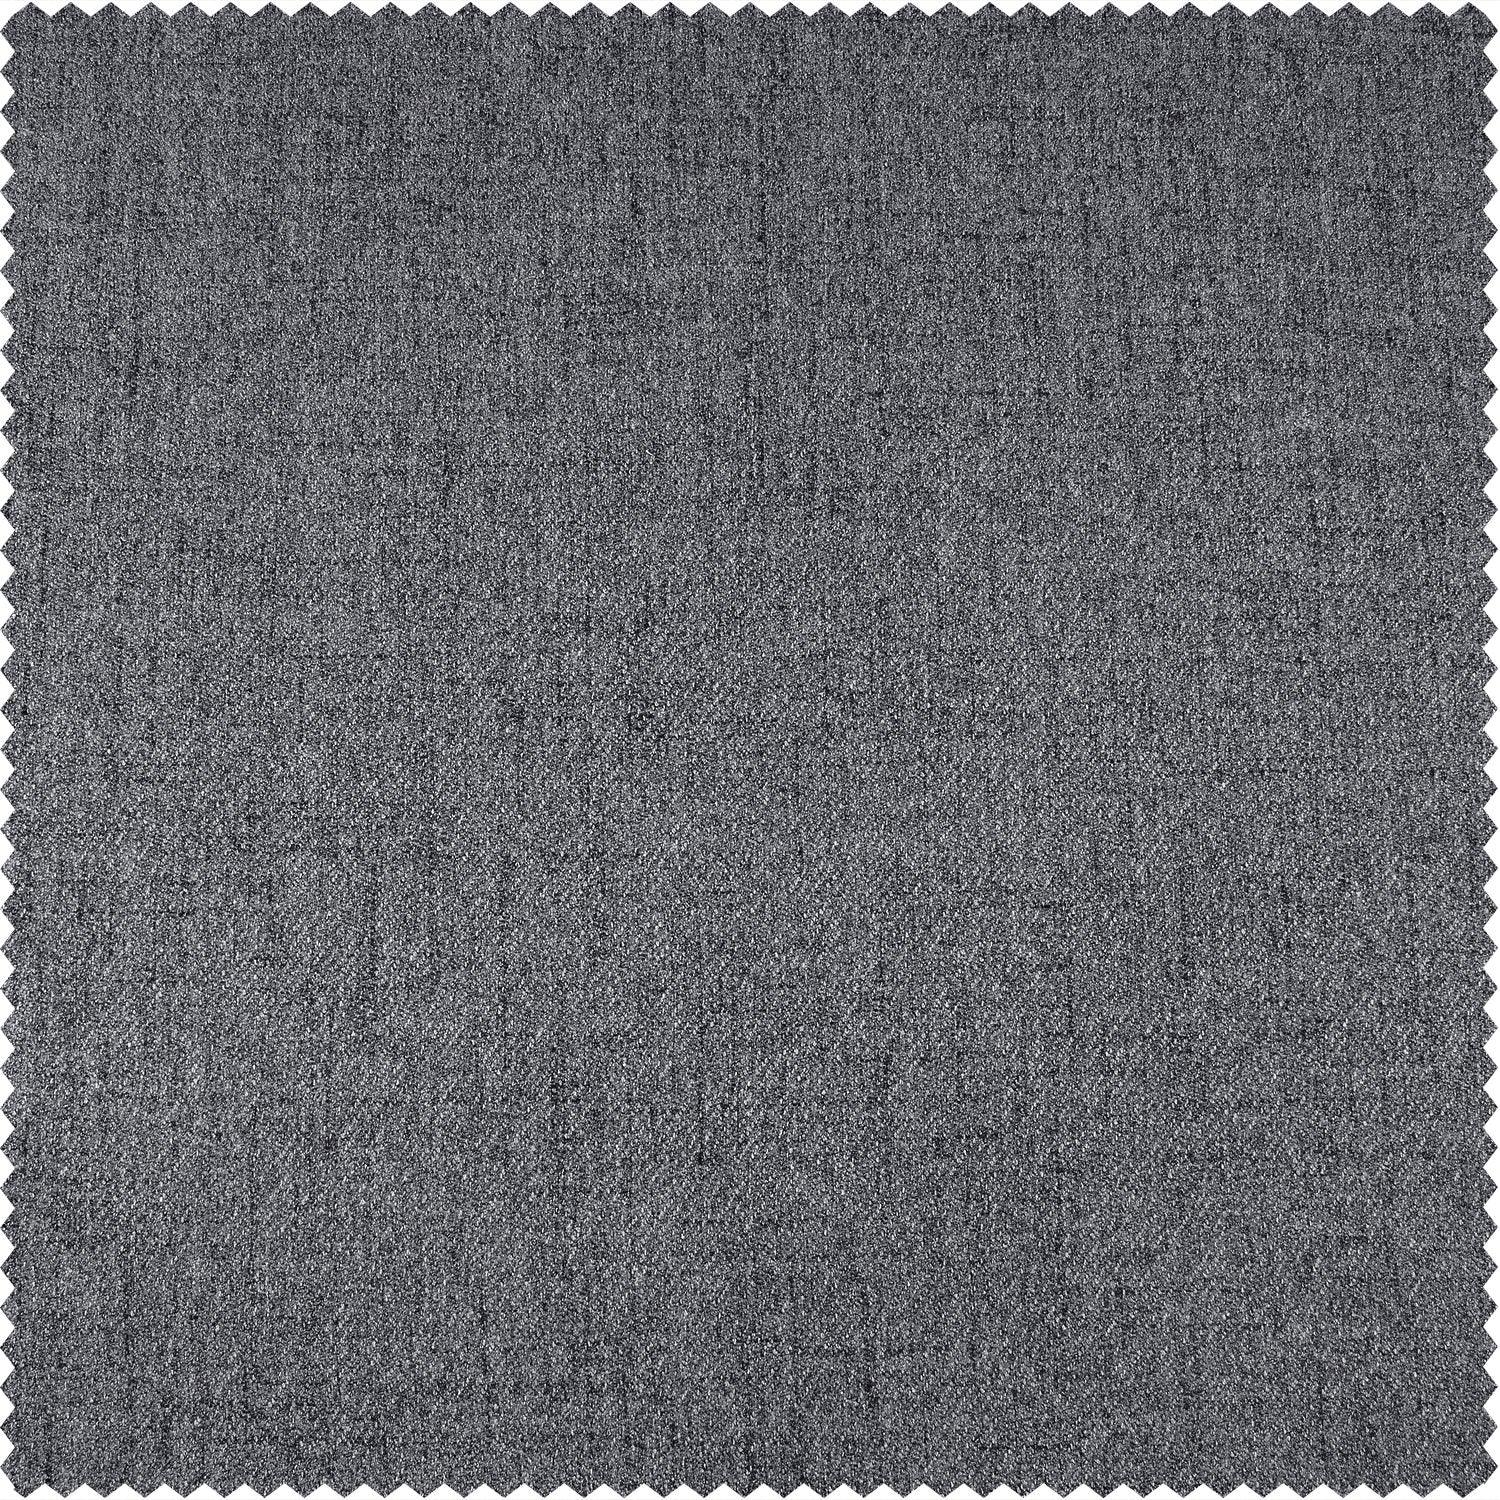 Modern Grey French Pleat Heathered Woolen Weave Room Darkening Curtain